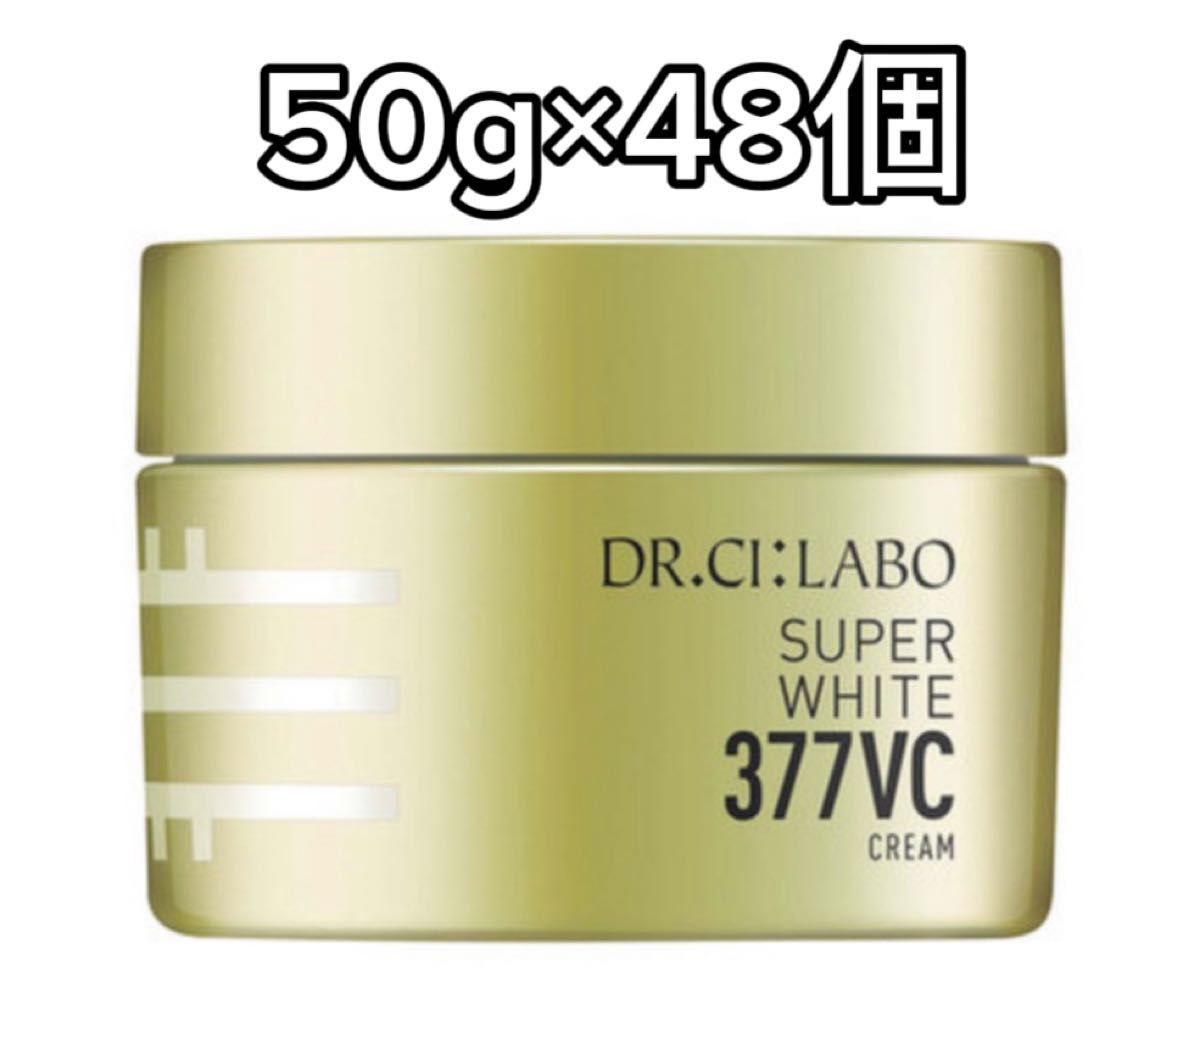 ドクターシーラボ スーパーホワイト377VCクリーム 50g×48個